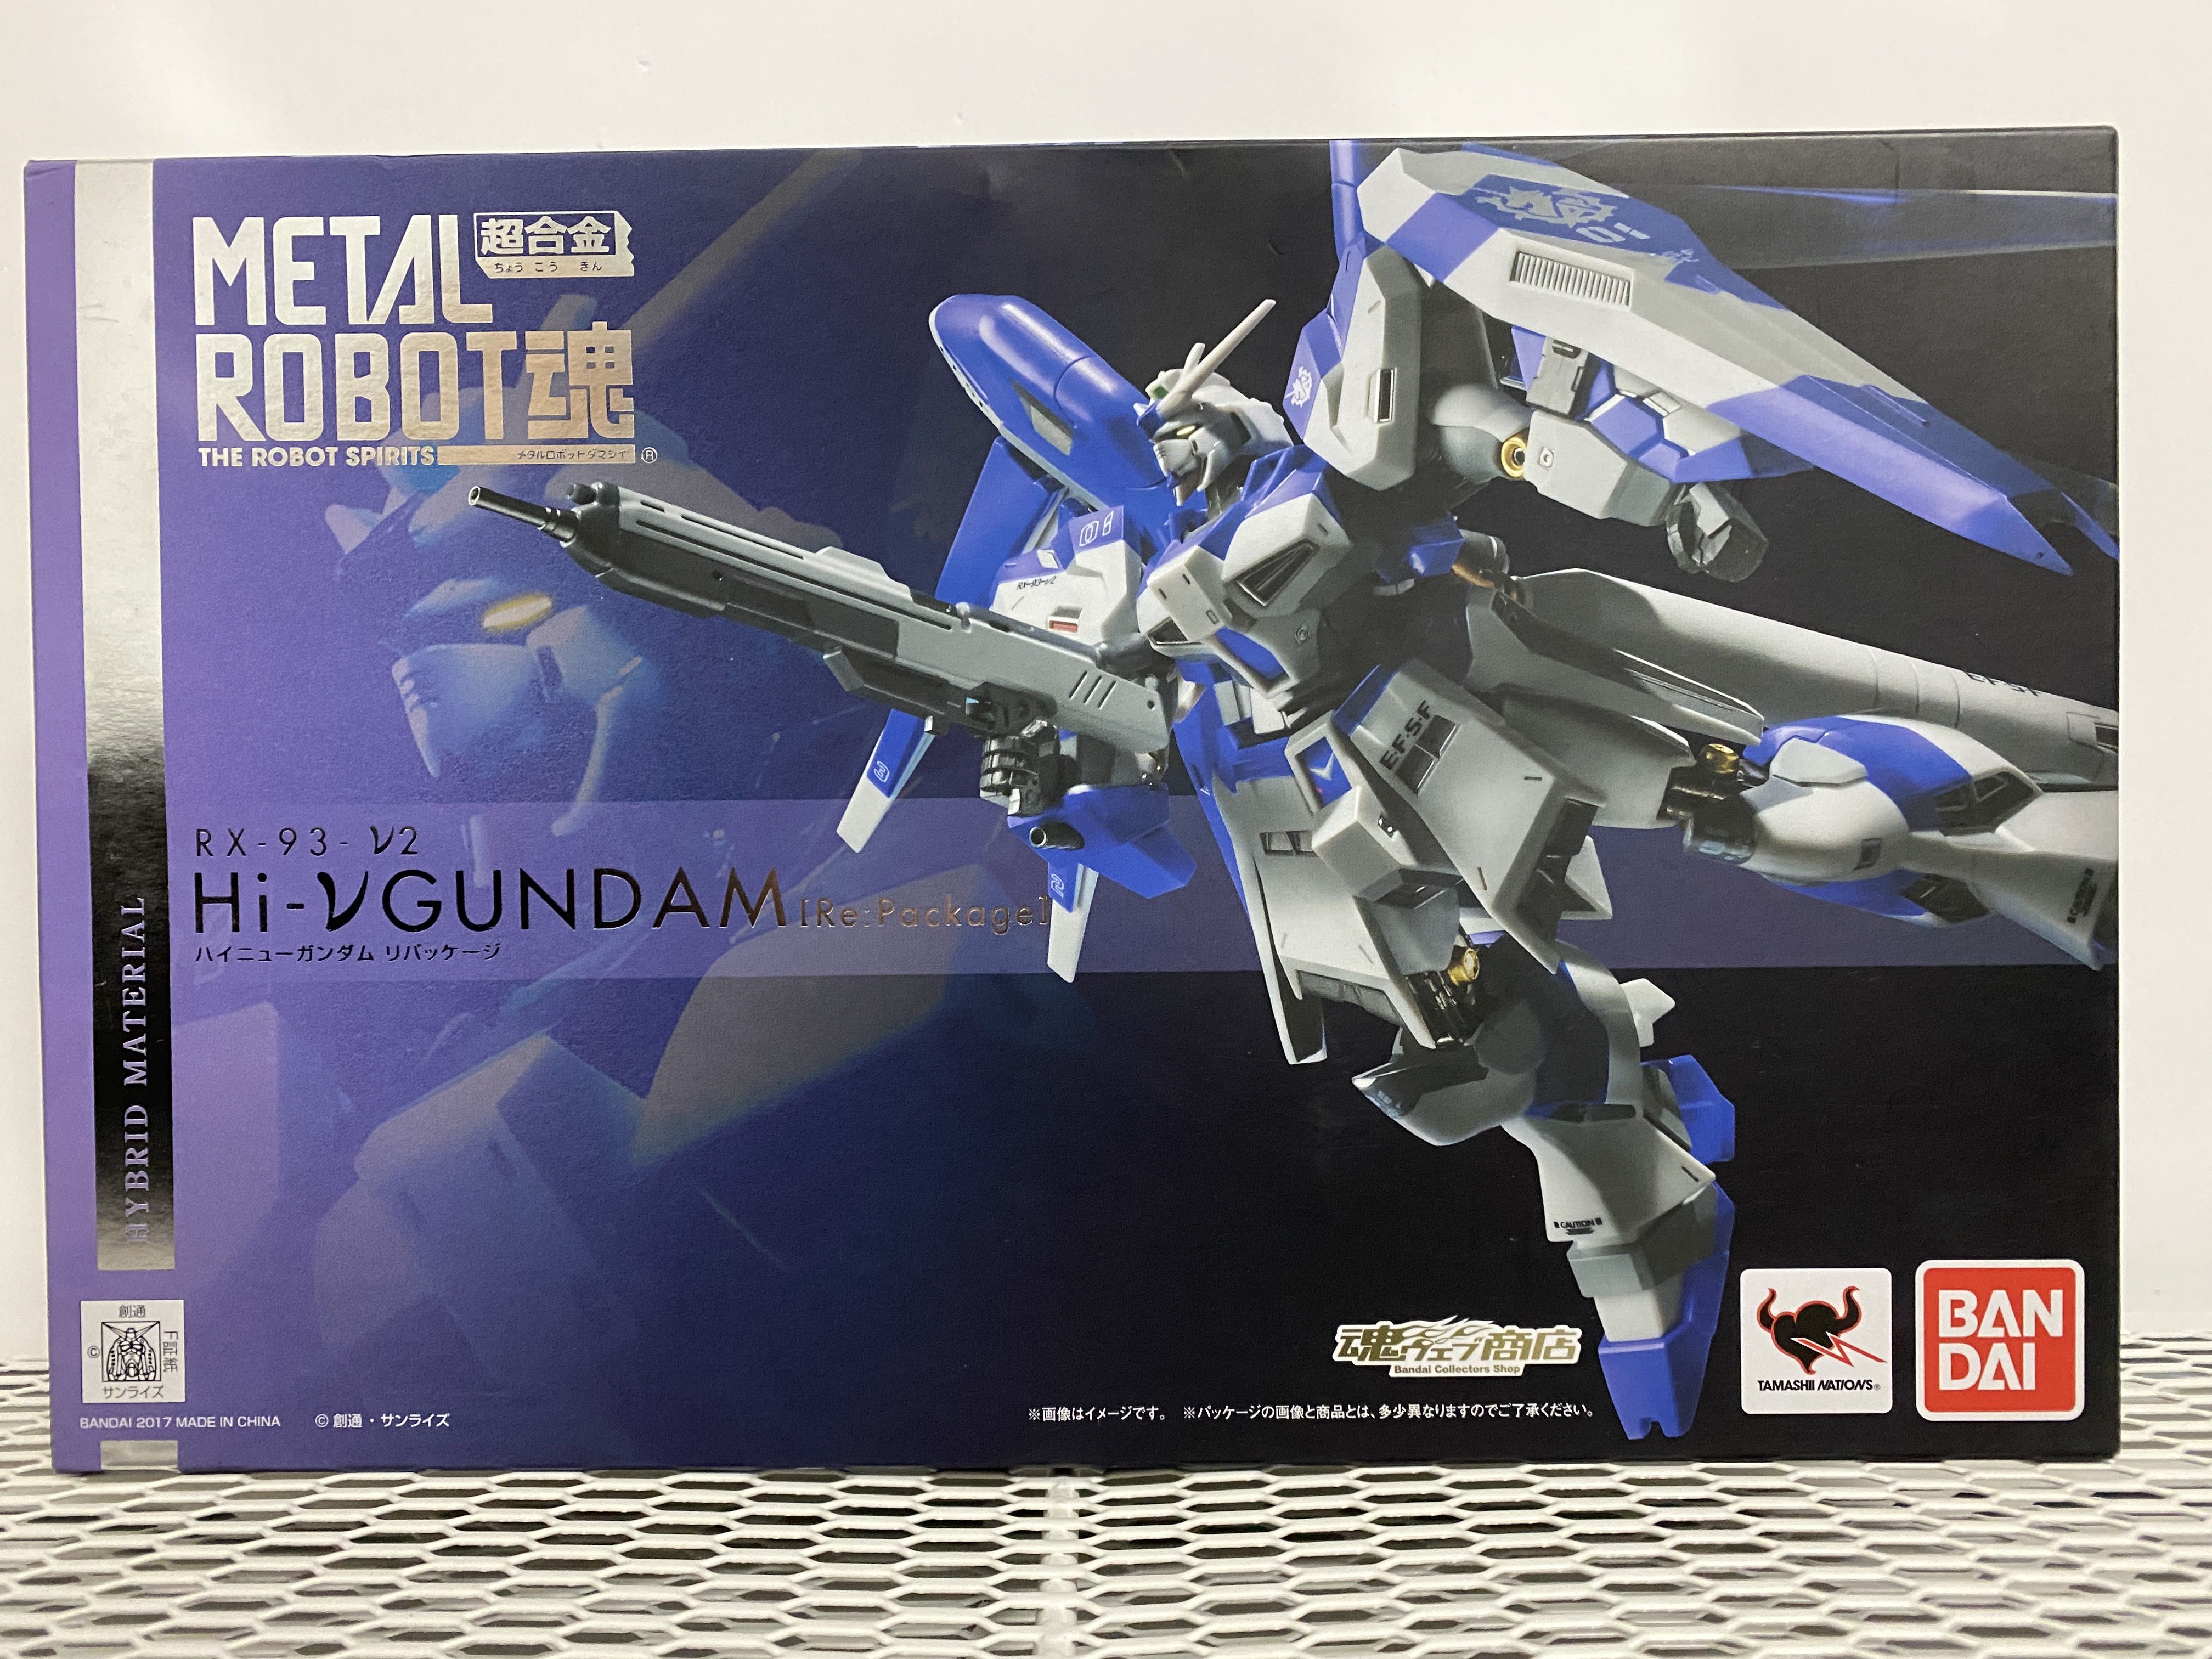 超合金Metal Robot 魂RX-93 Hi-Nu Gundam［Re : Package](日版